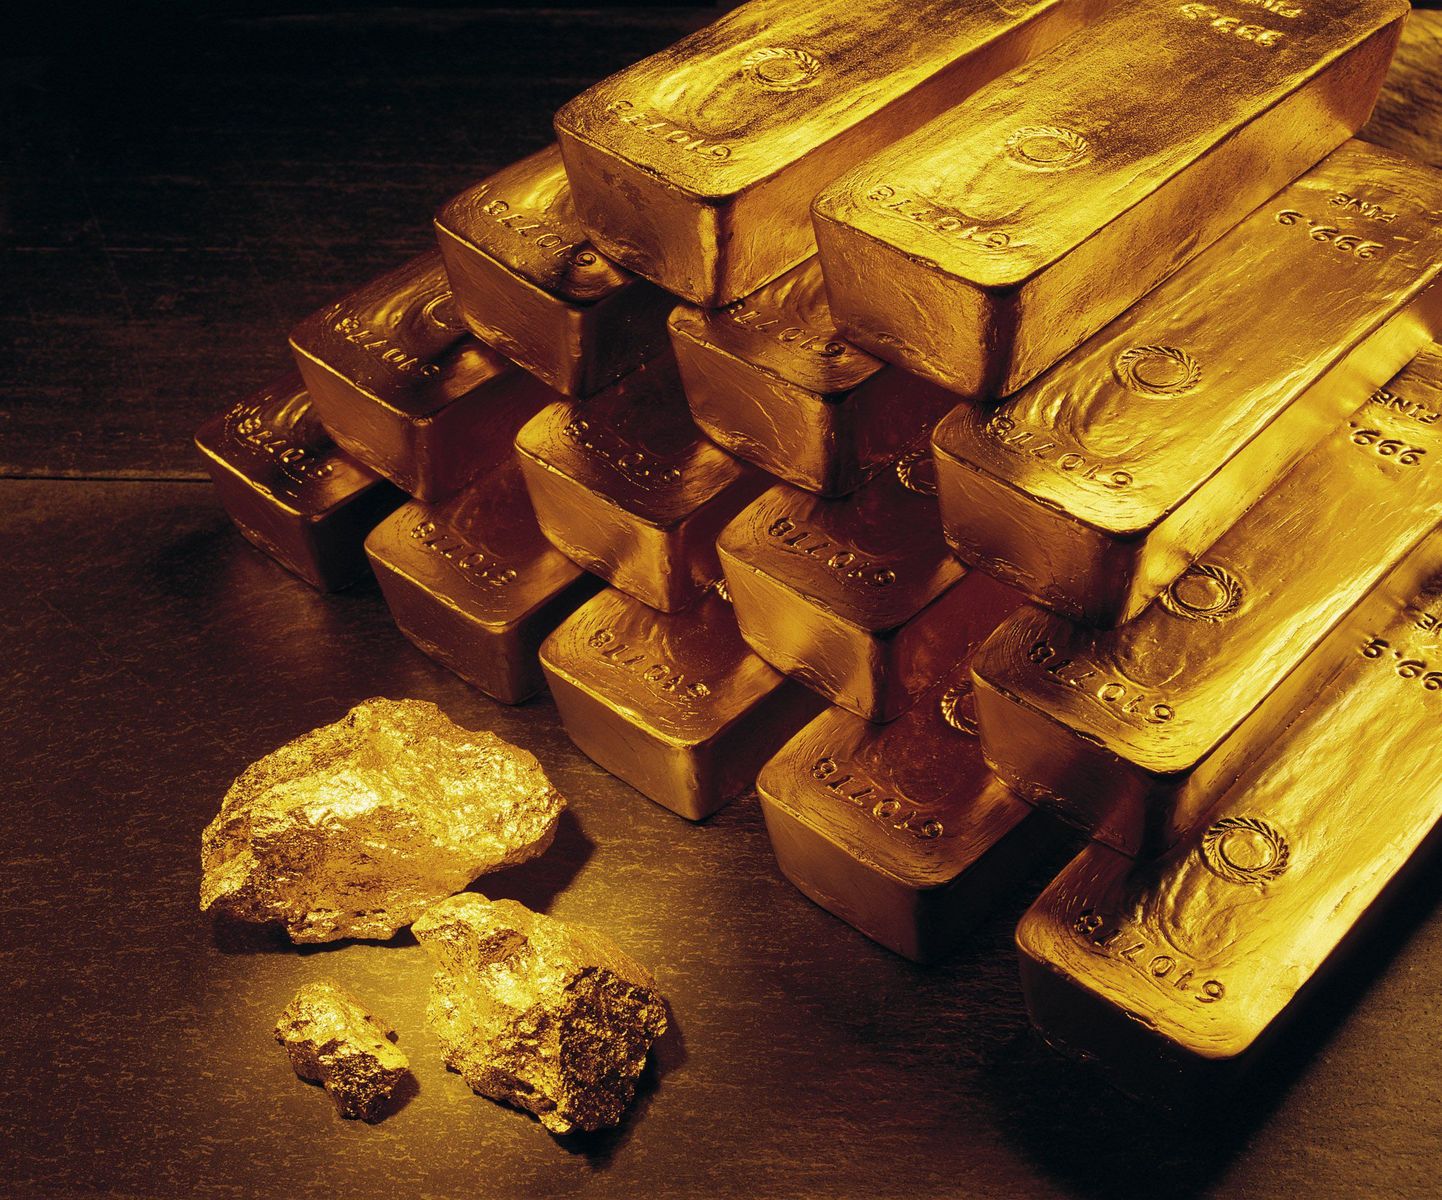 Rolexi tehasest varastati üle 15 kilogrammi kulda